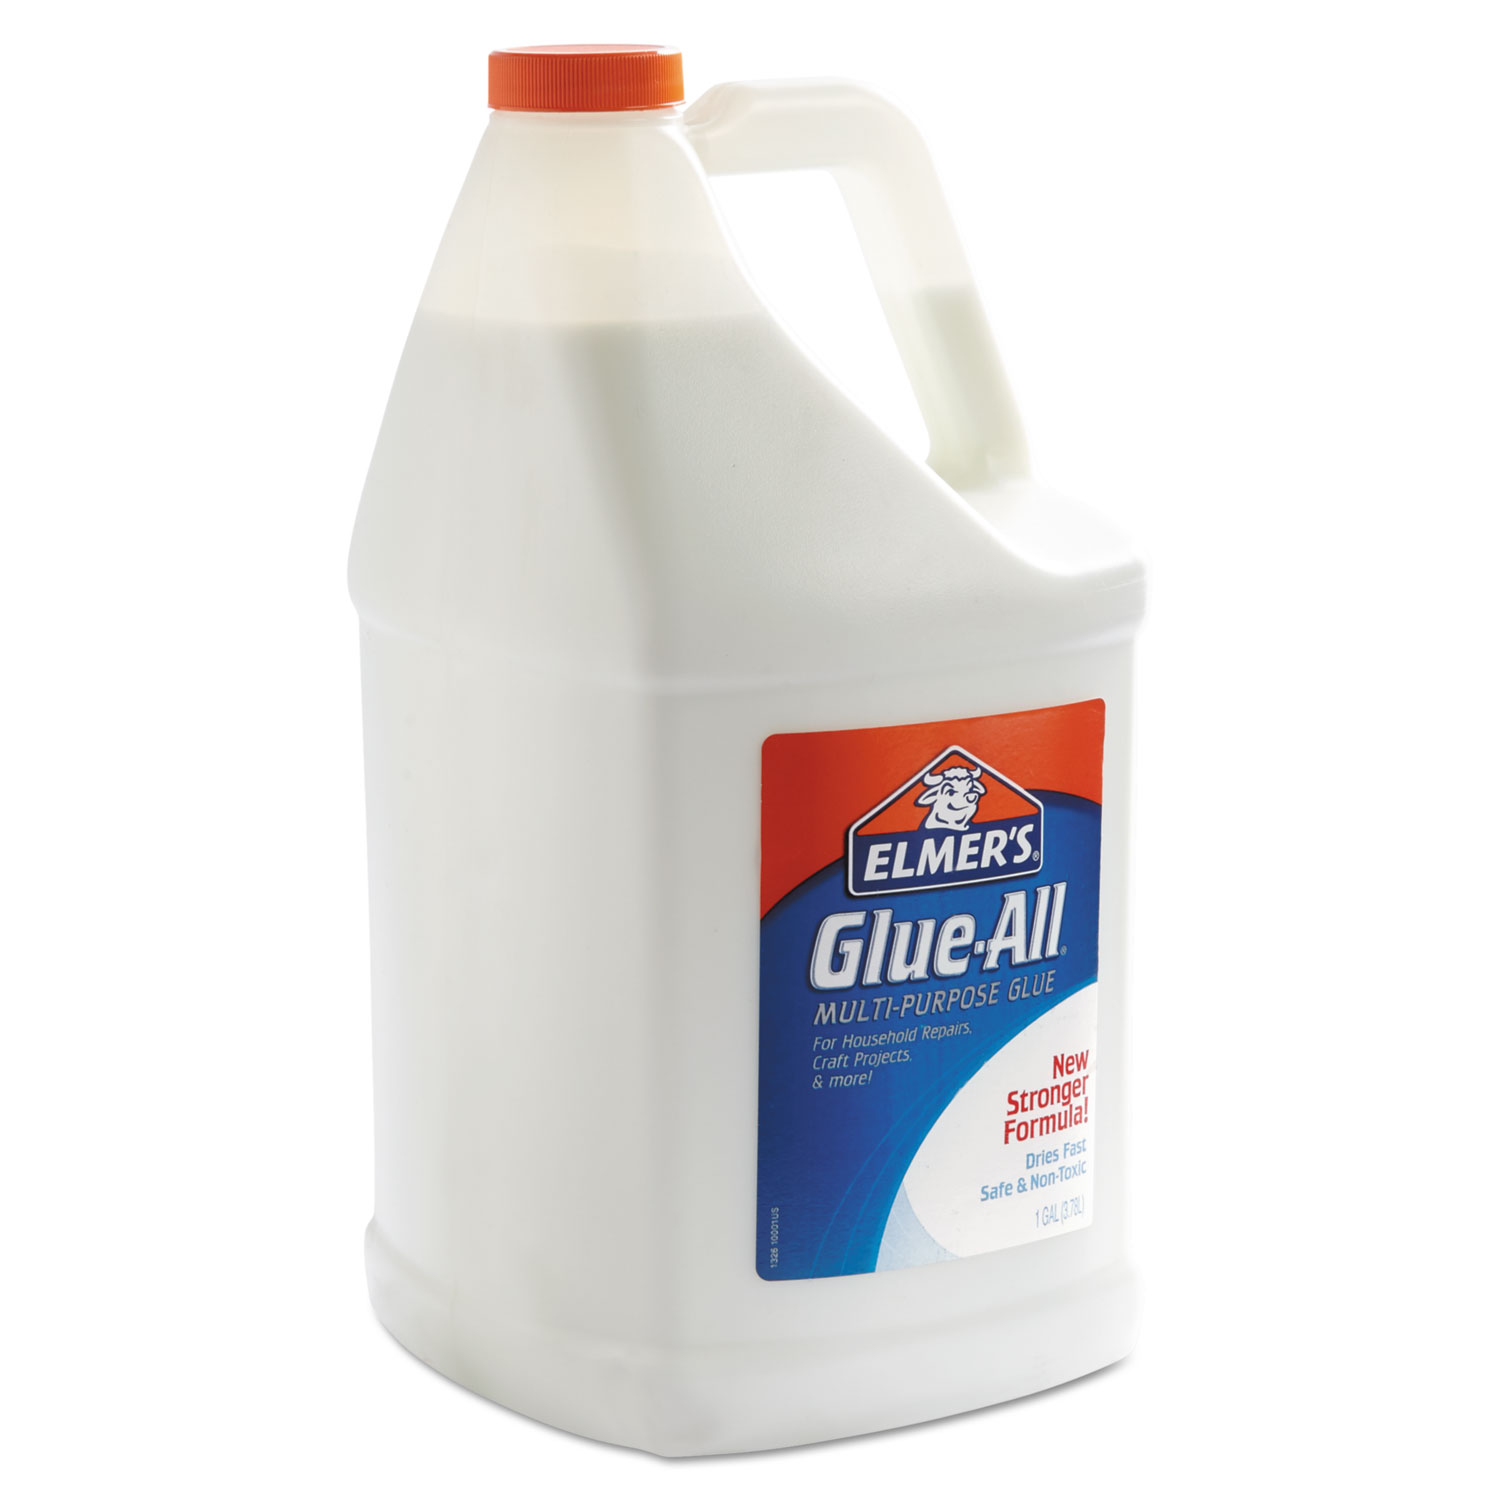 Glue All Purpose Elmer's White Glue 1 Gallon